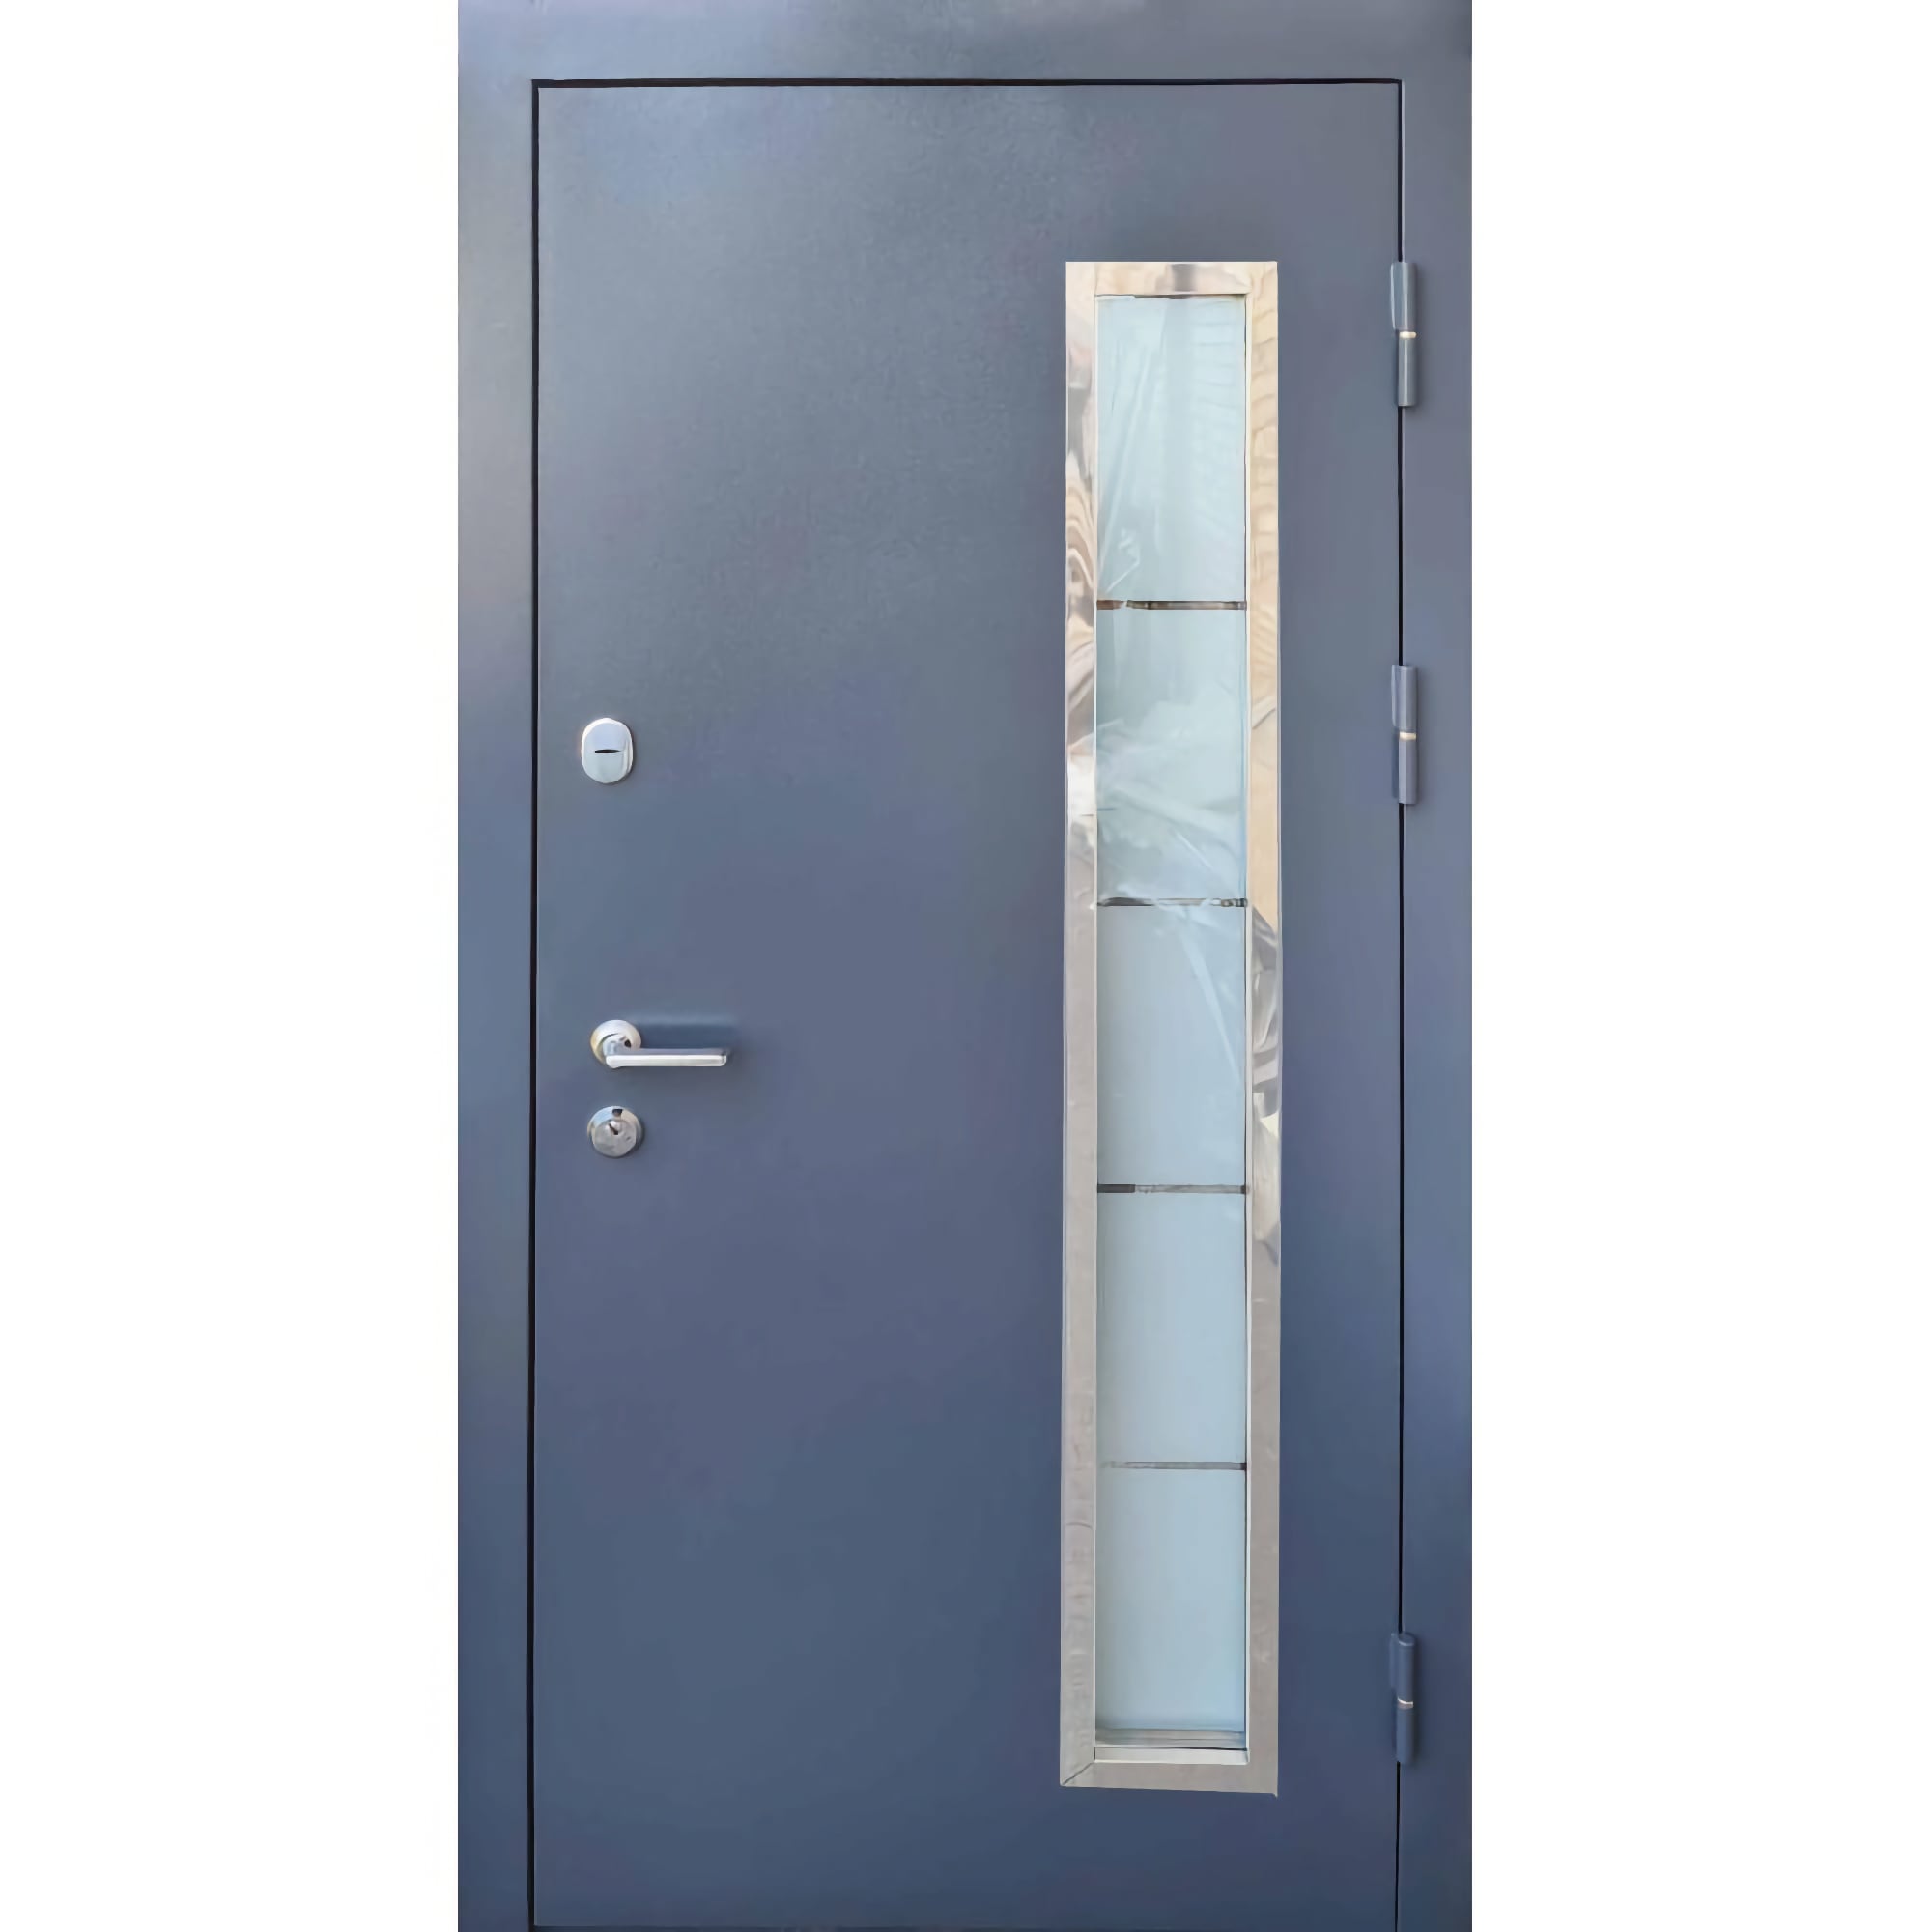 Входные двери с МДФ накладкой: фото и цена в магазине дверей - Стандарт плюс МДФ/МДФ Стеклопакет 960